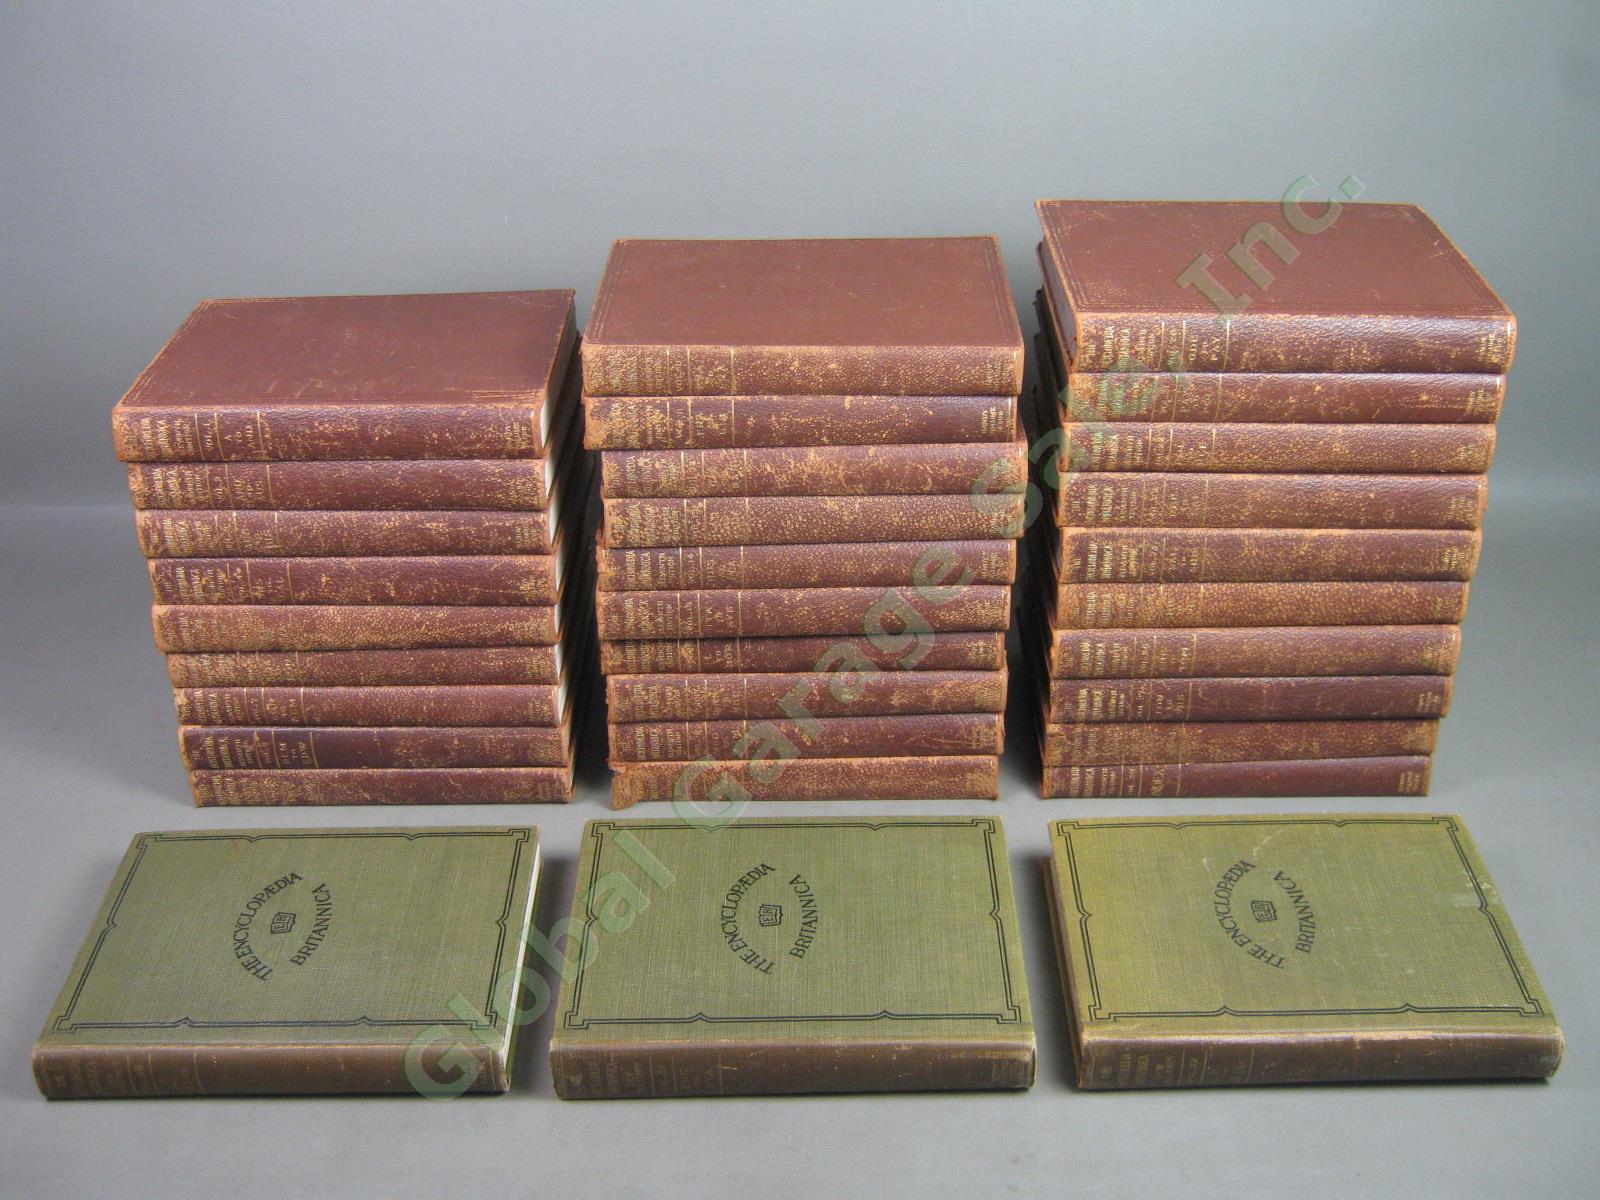 Encyclopedia Britannica 11th Edition Complete Handy 29 Vol Set 1910-1911 +3 1922